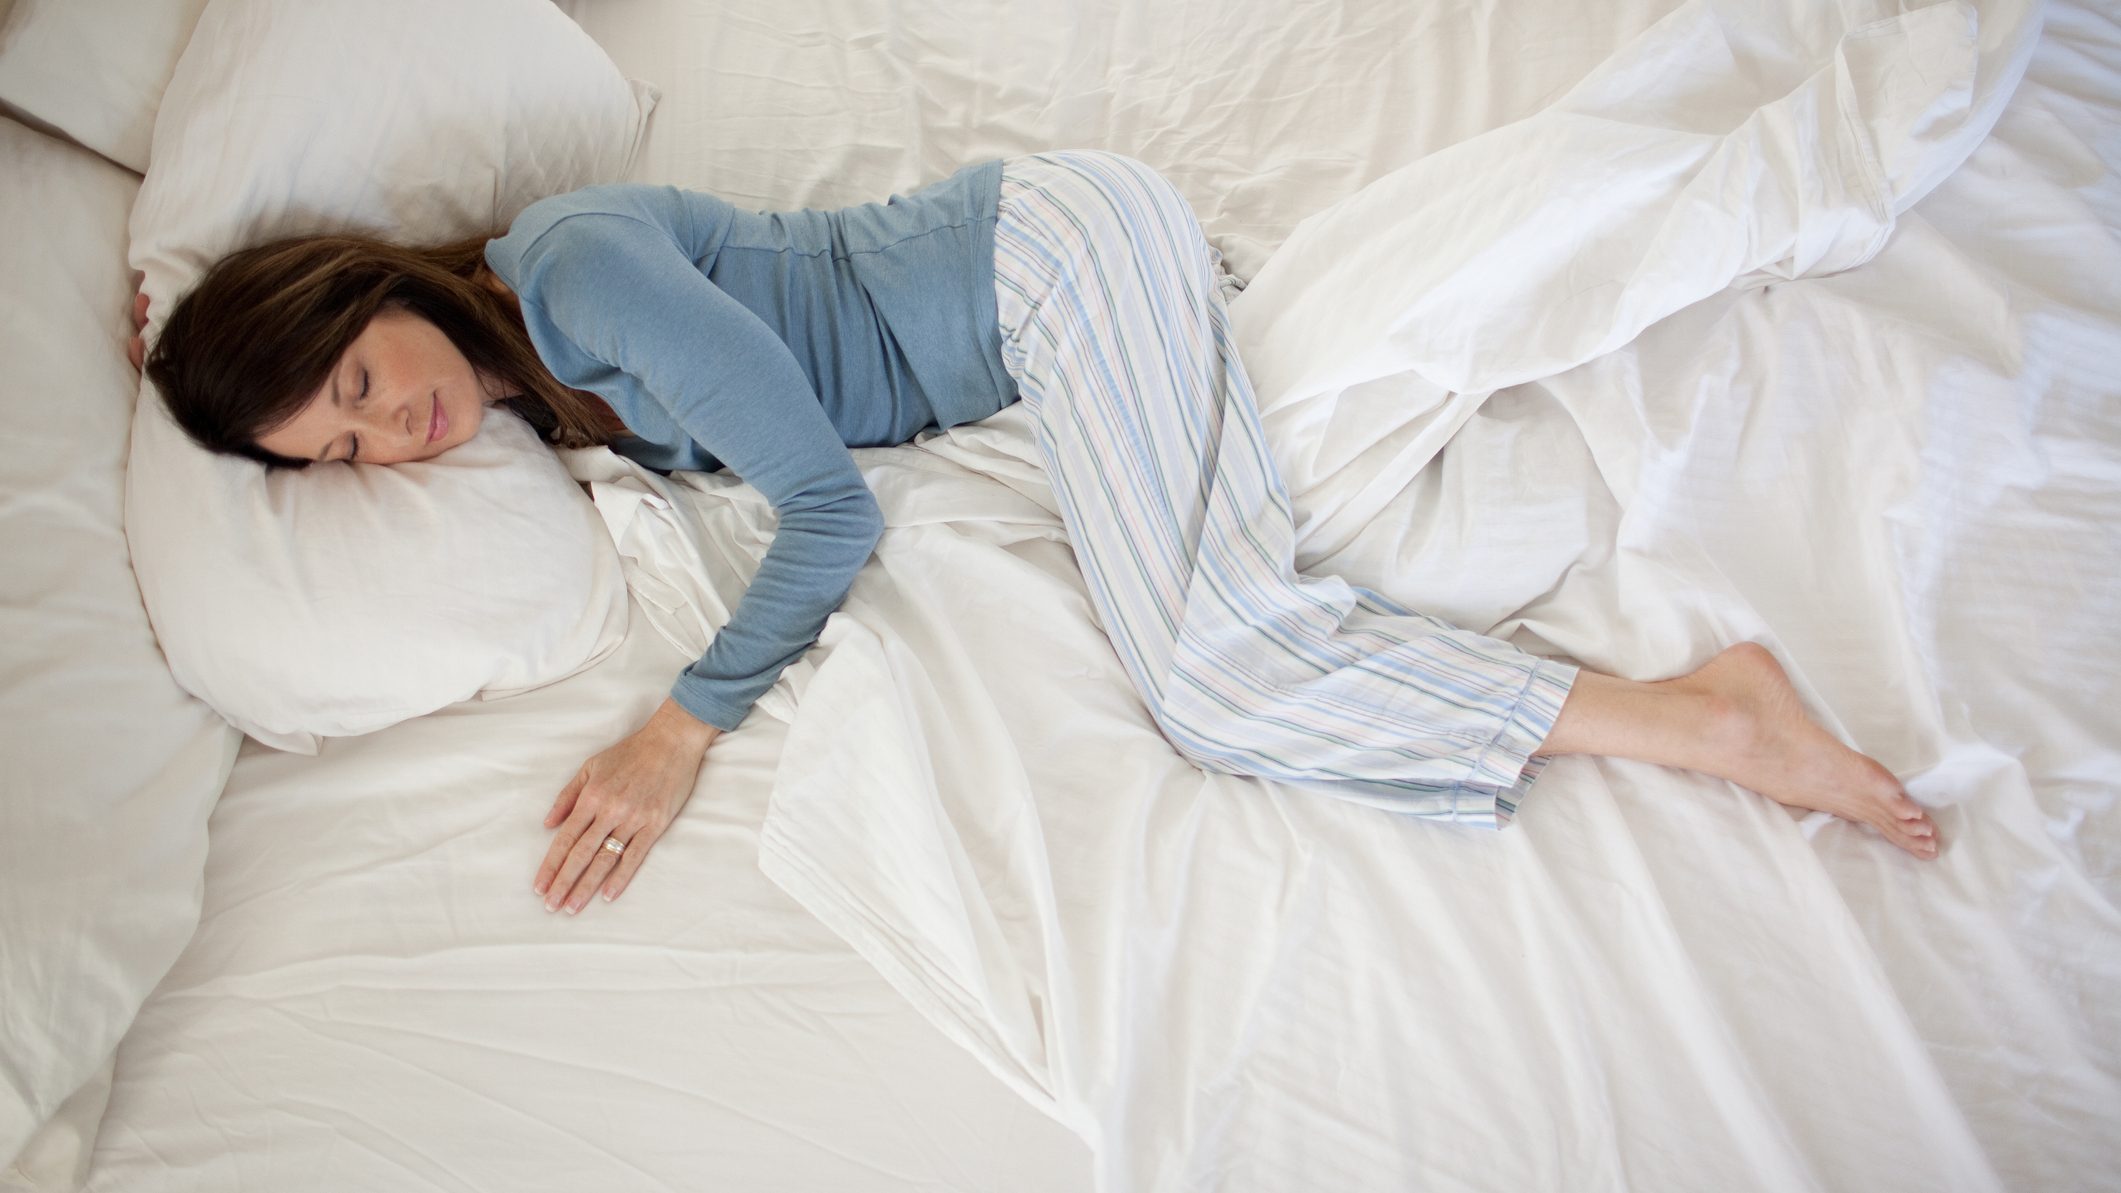 Pef vacío roble Beneficios de dormir con una almohada entre las piernas - Cadena Dial